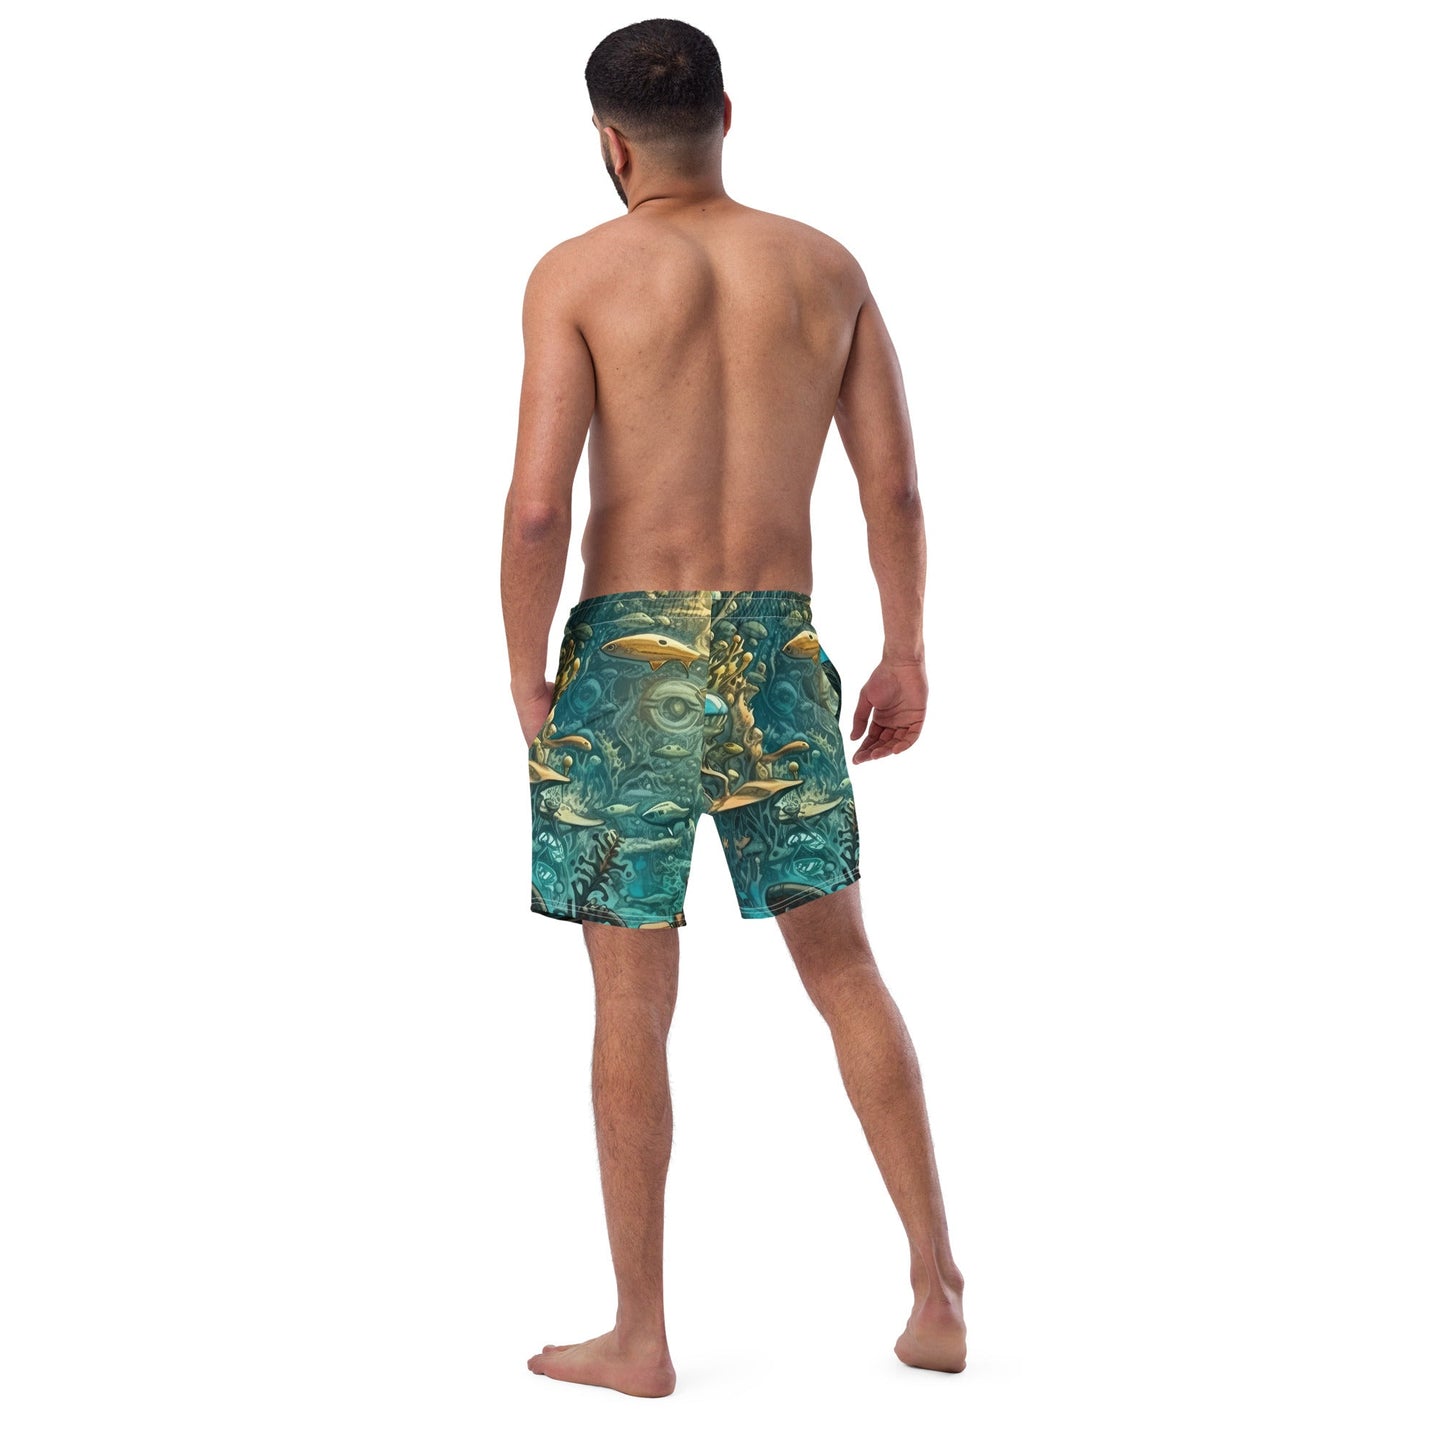 Men's swim trunks - Sea Titan Paddleboards - Men's swim trunks